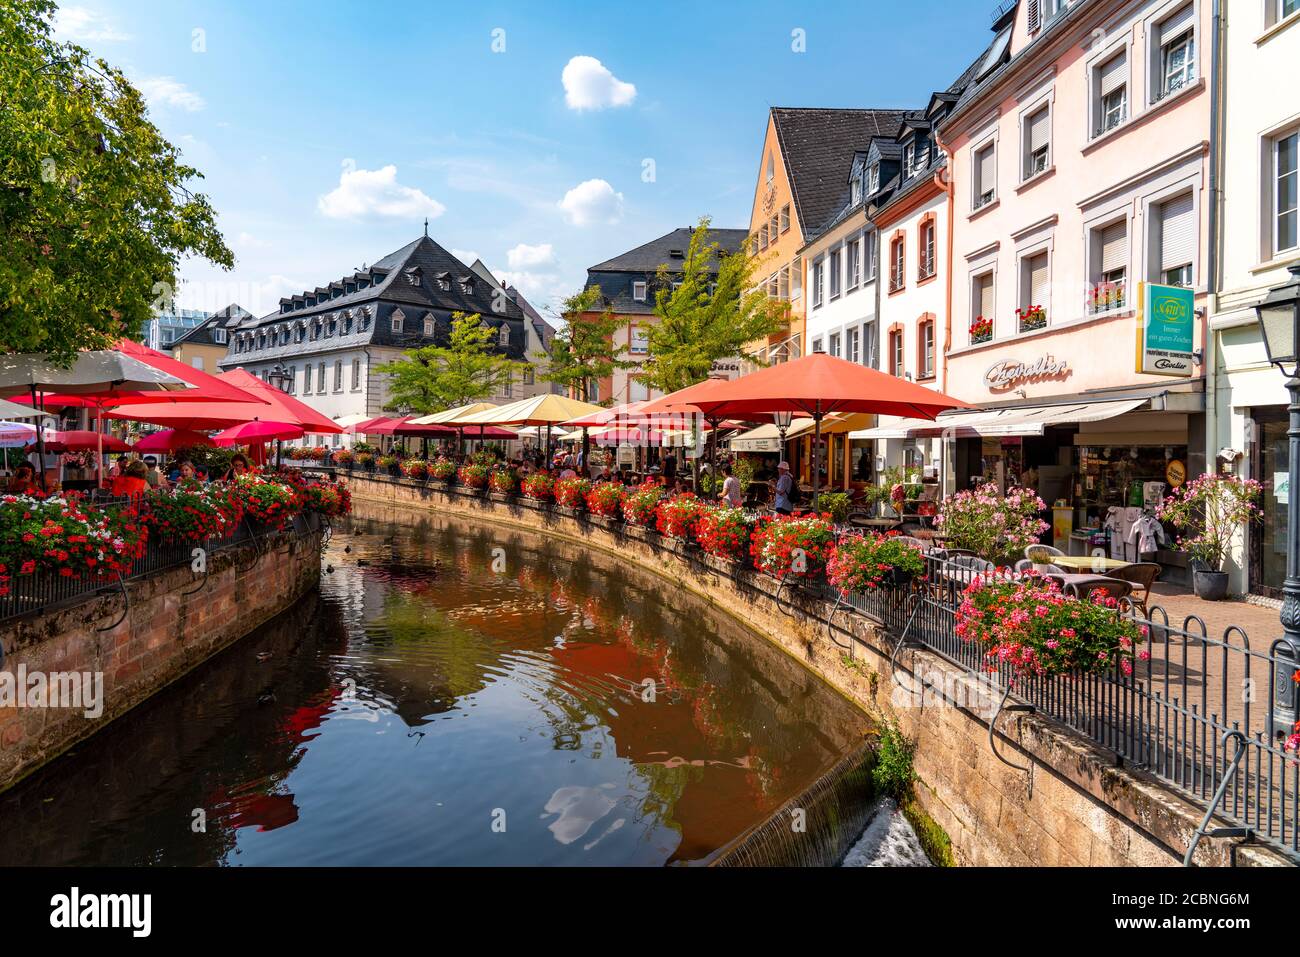 La place Saarburg, sur le Saar, sur le marché, la gastronomie sur le ruisseau Leuk, prend son entaille dans le Saar, la gastronomie Rhénanie-Palatinat, Allemagne Banque D'Images